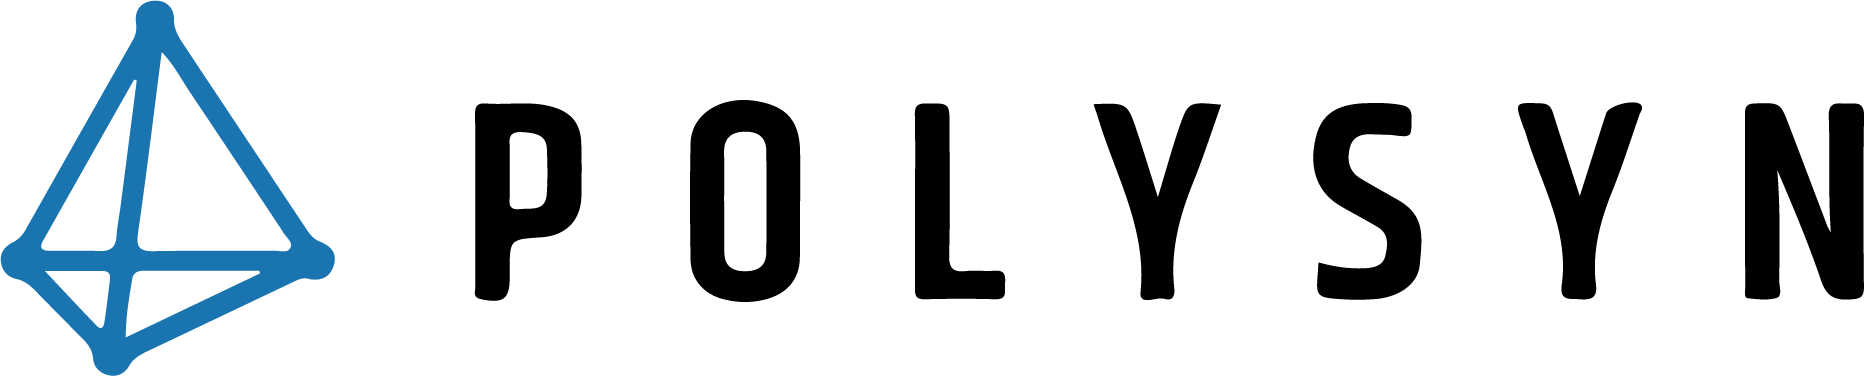 5-Thio-D-glucopyranose 1,2,3,4,6-pentaacetate